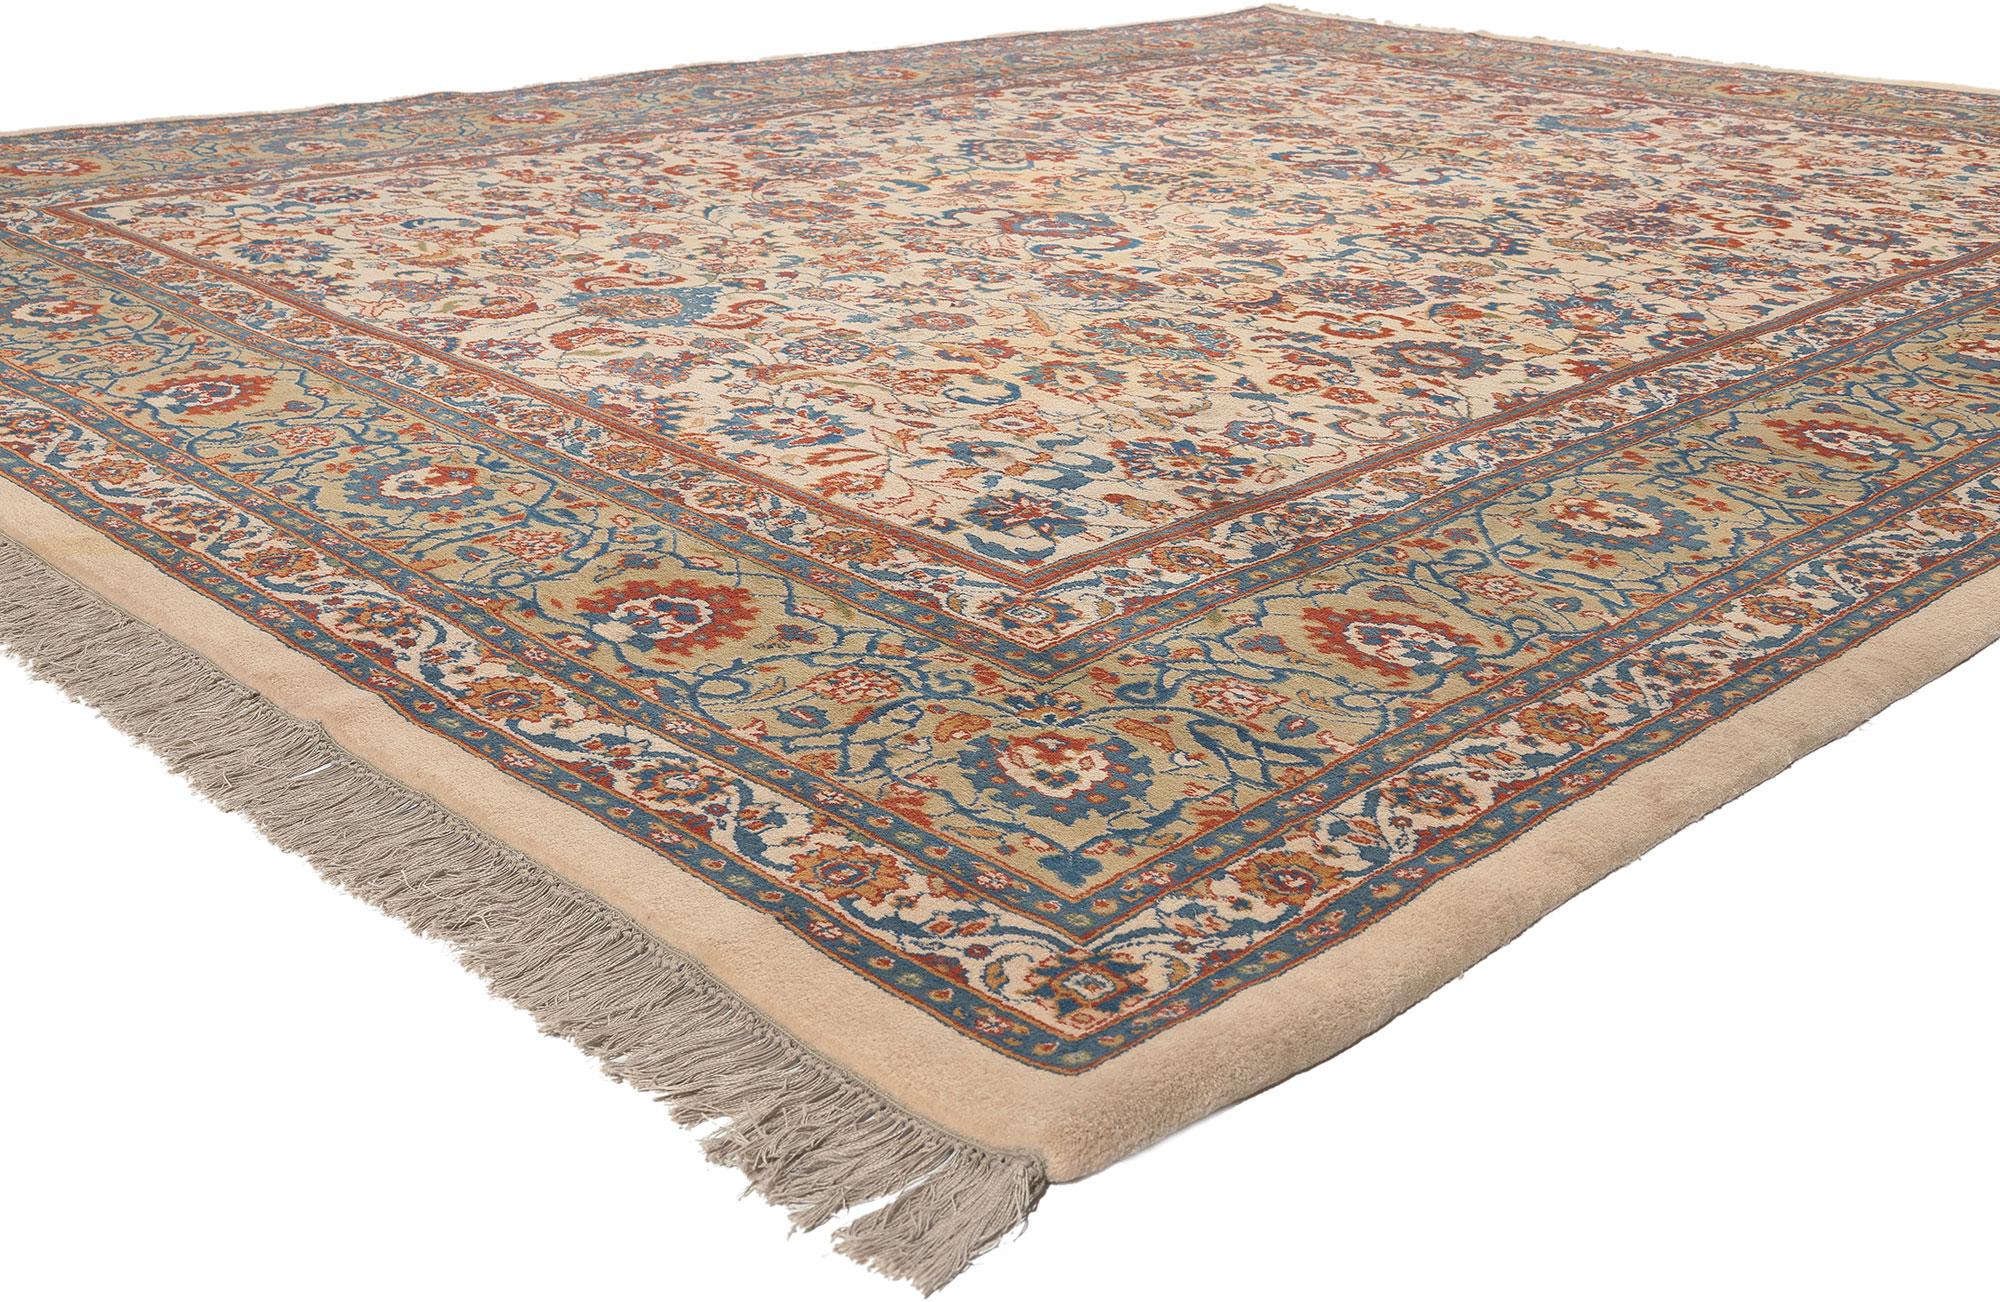 70265 Tapis indien vintage Tabriz, 09'00 x 12'00. 
La sensibilité traditionnelle rencontre l'élégance intemporelle dans ce tapis Tabriz indien vintage en laine nouée à la main. Le design botanique décoratif et la palette de couleurs sophistiquée